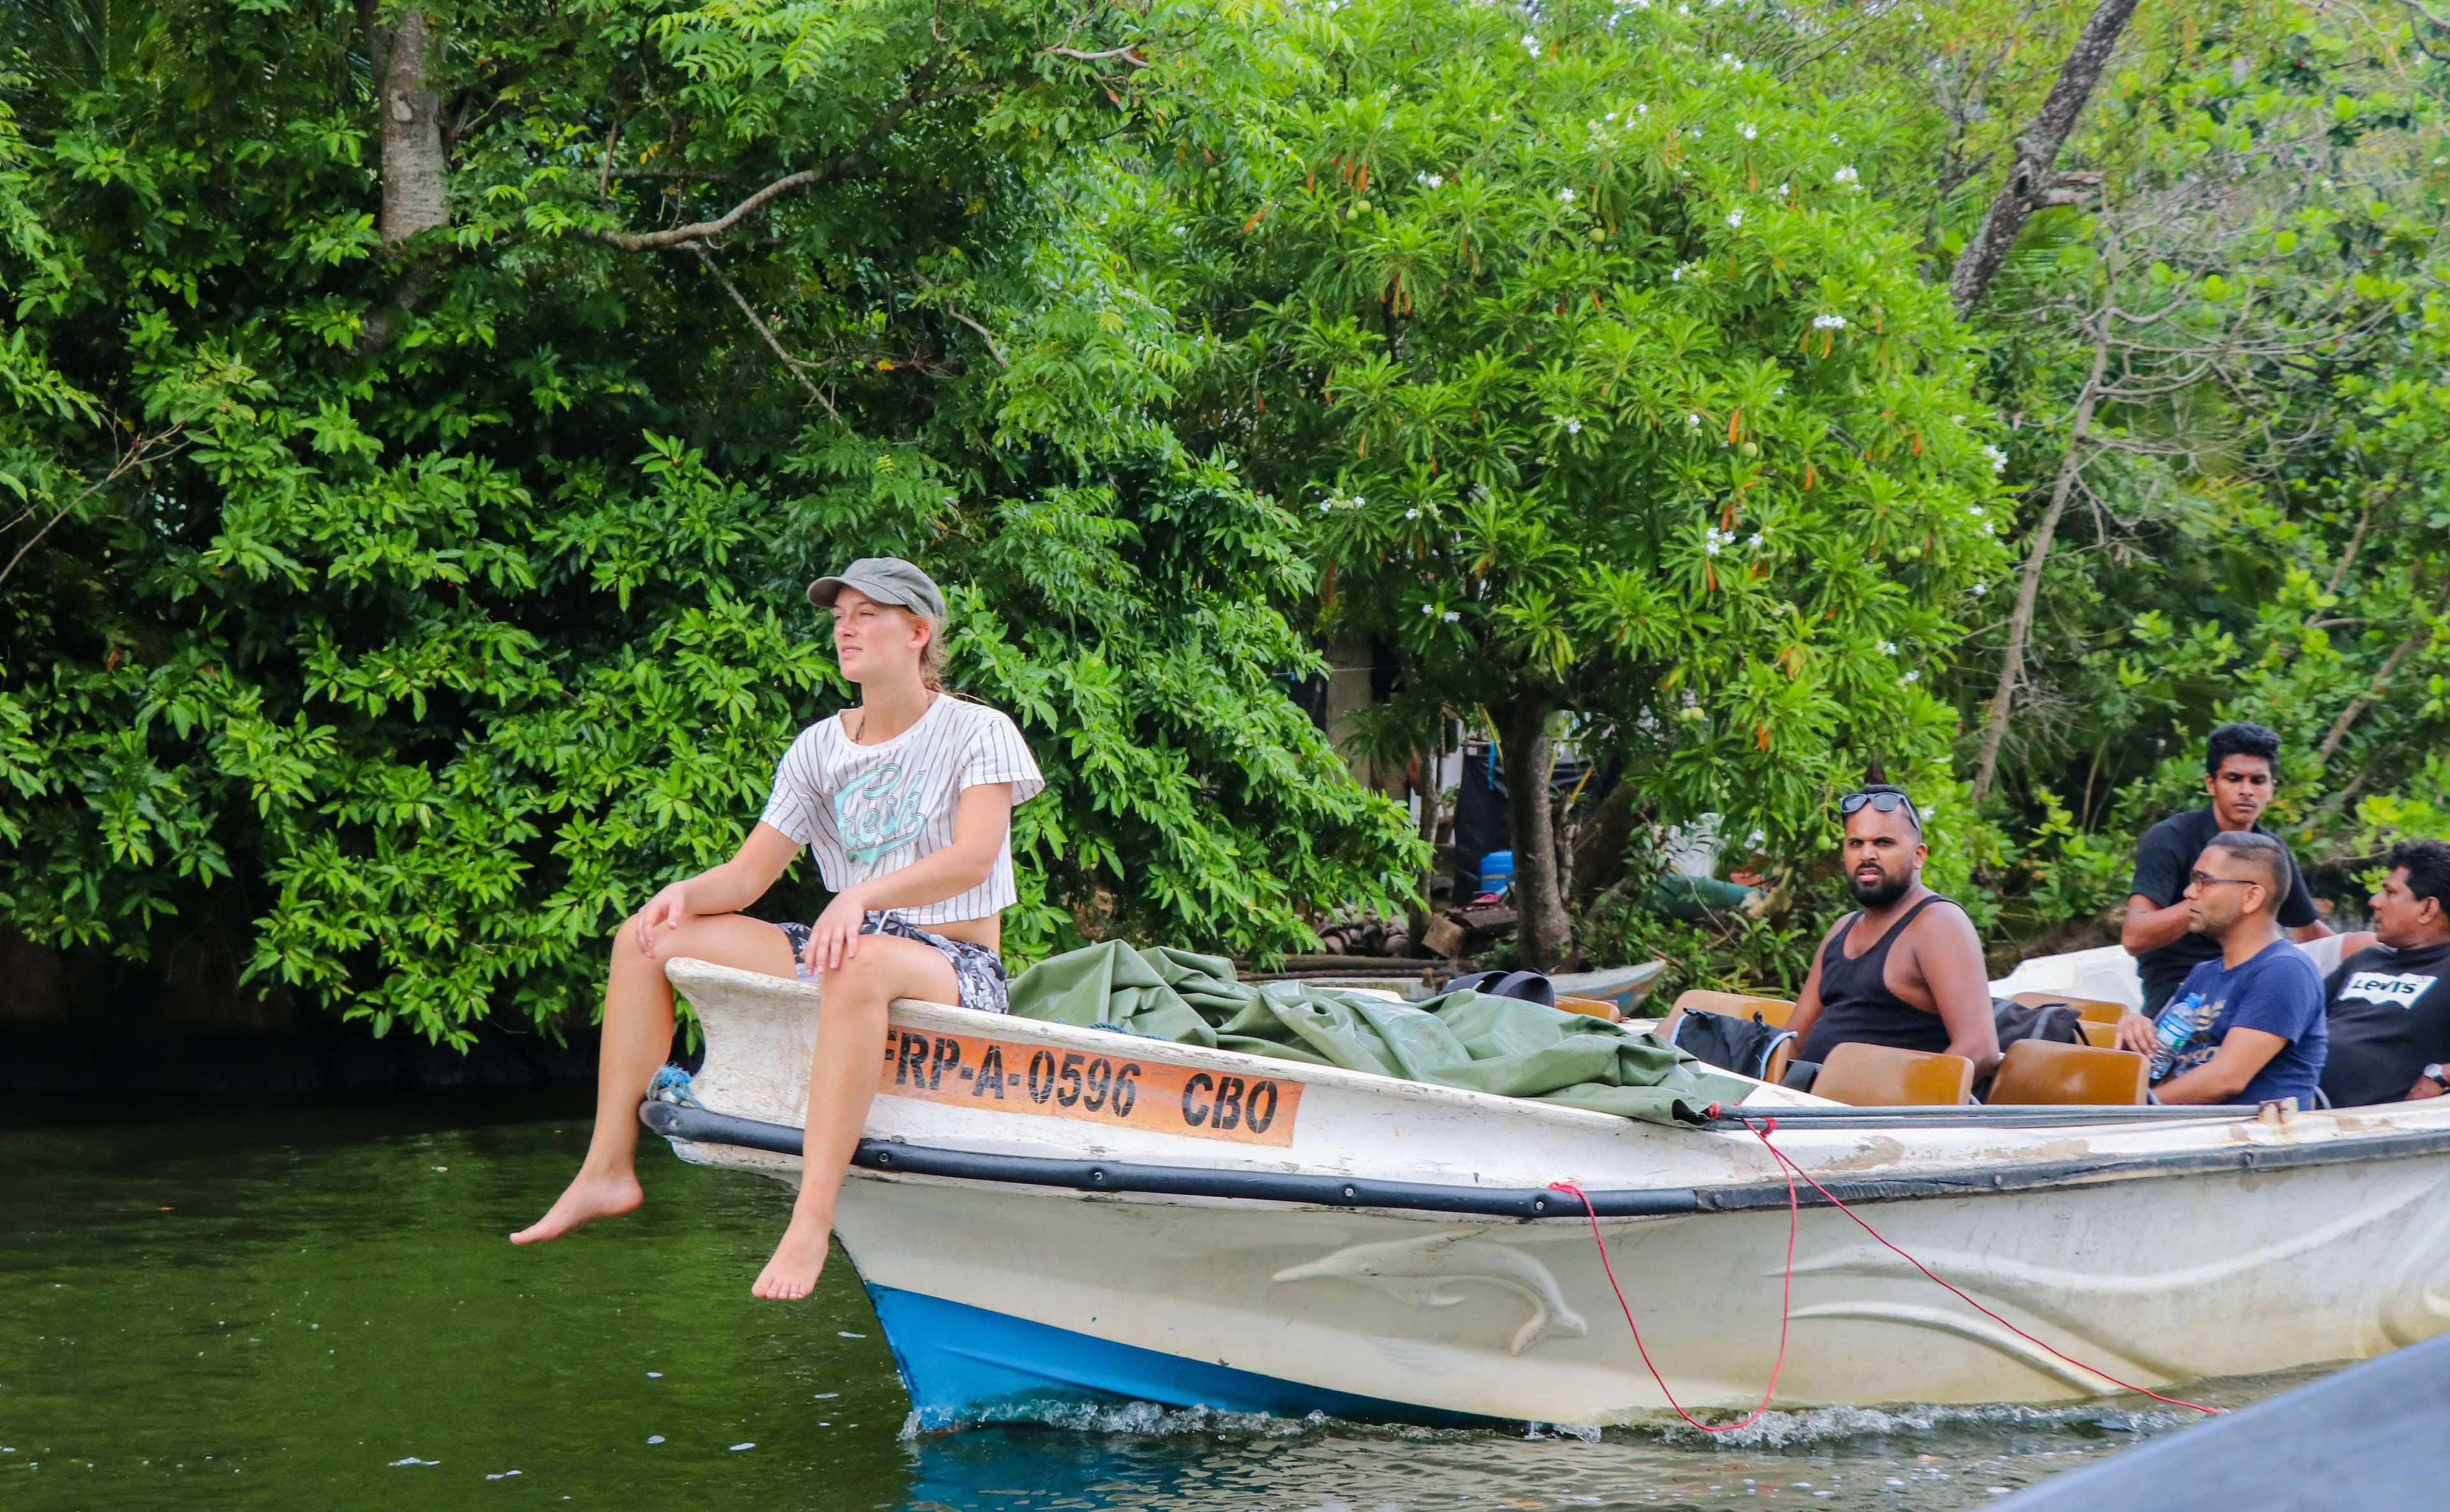 Los turistas disfrutan de su paseo en barco con la observación de aves en Negombo, Sri Lanka